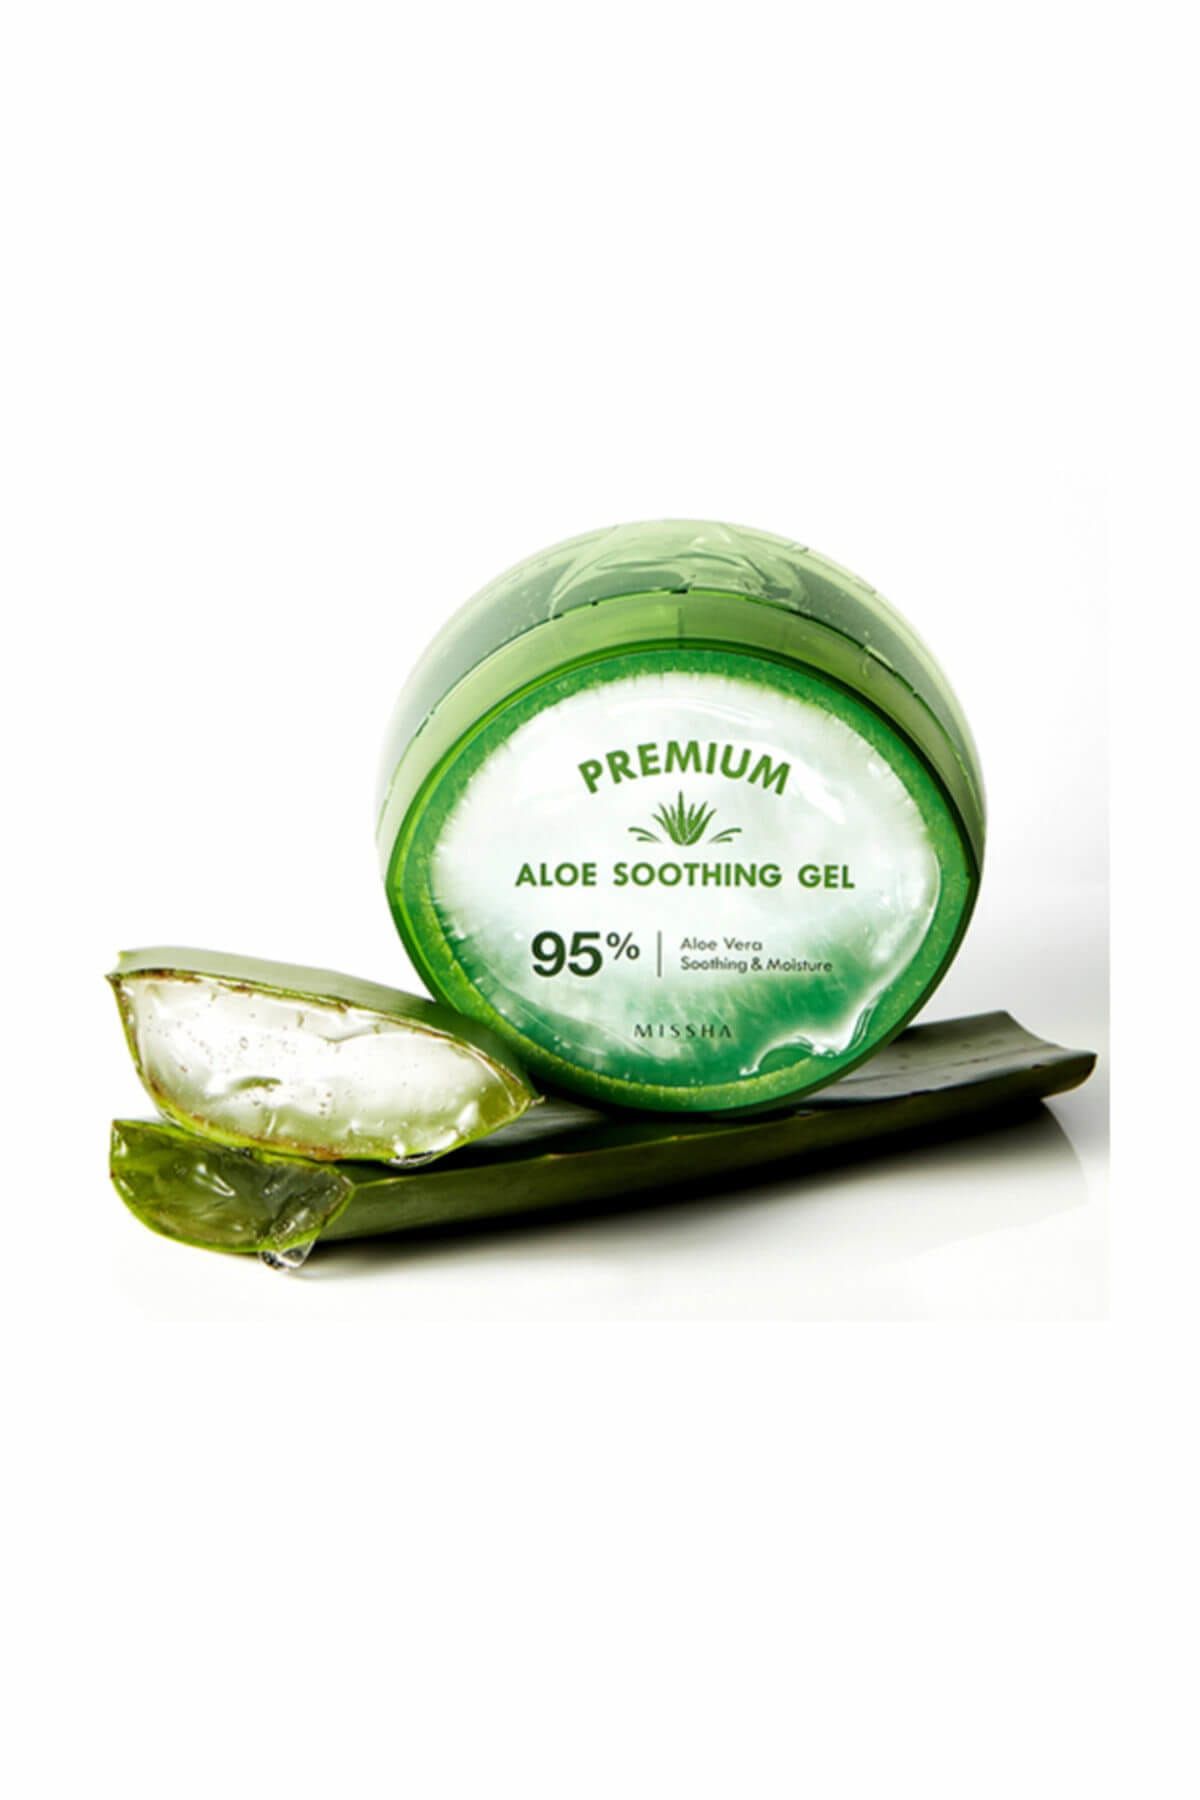 Missha %95 Aloe Vera Özü İçeren Nemlendirici Jel - Premium Aloe Soothing Gel 300 ml 8809530052631